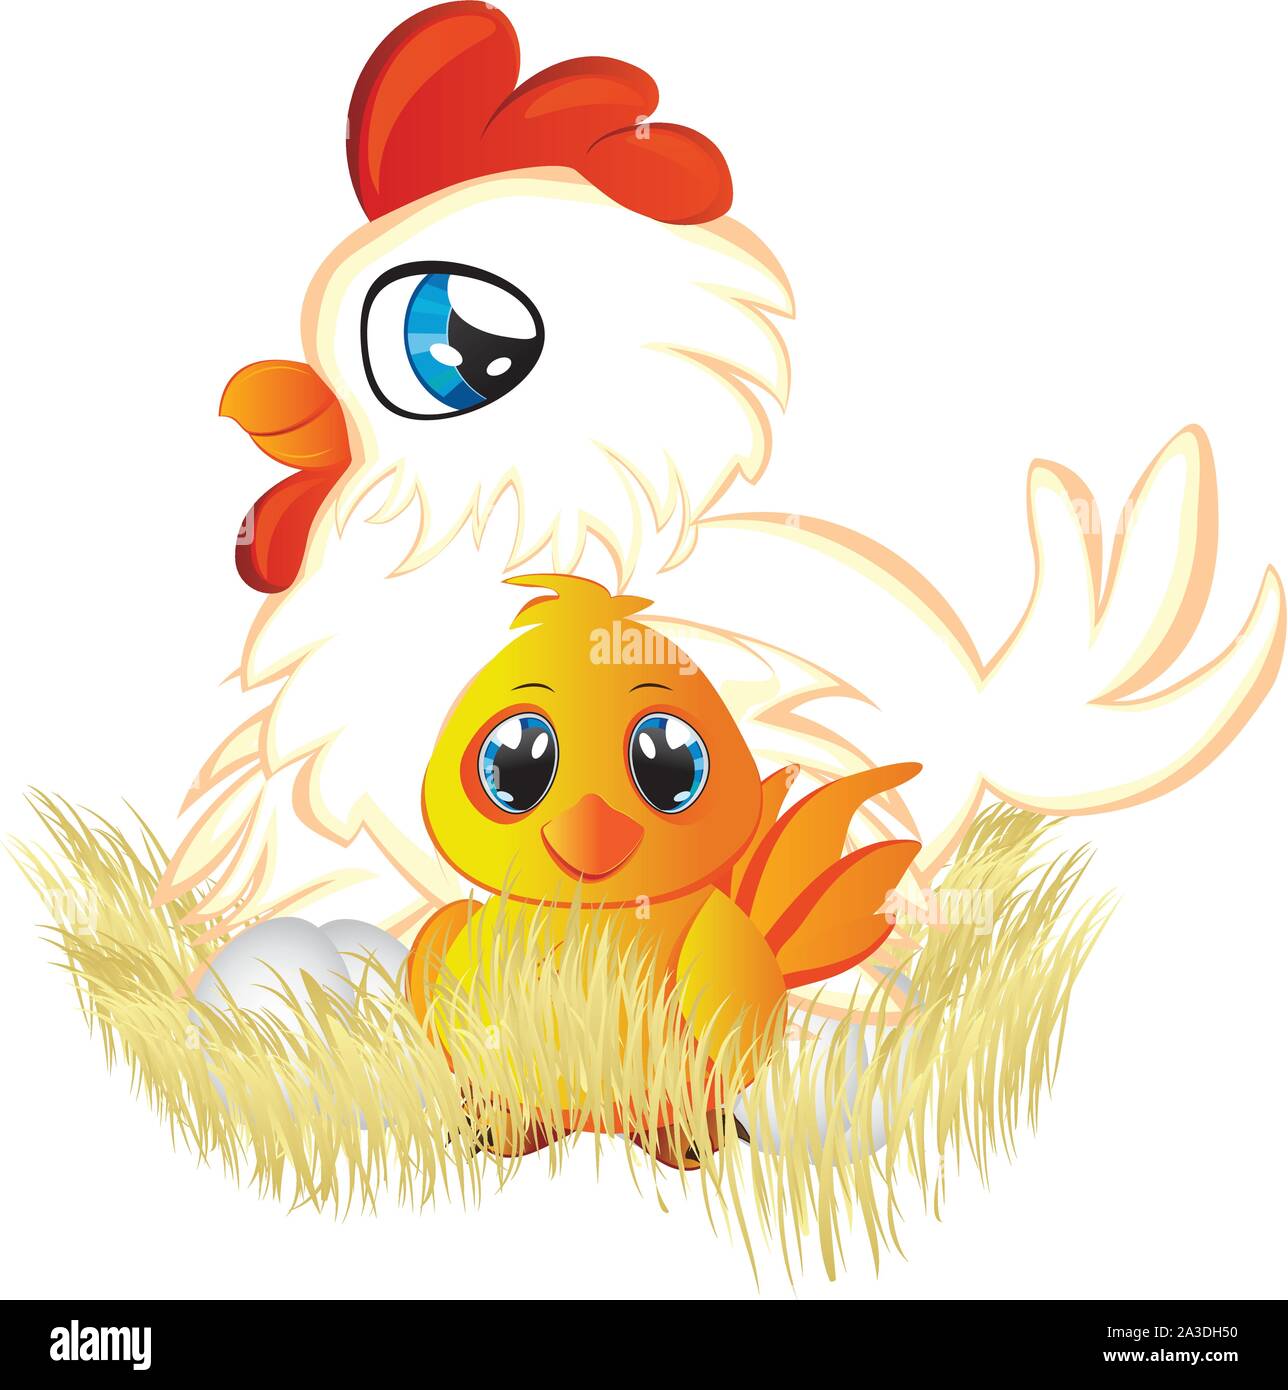 Cute Dibujos Animados Con Huevos De Gallina Blanca Y Amarillo Pollo En